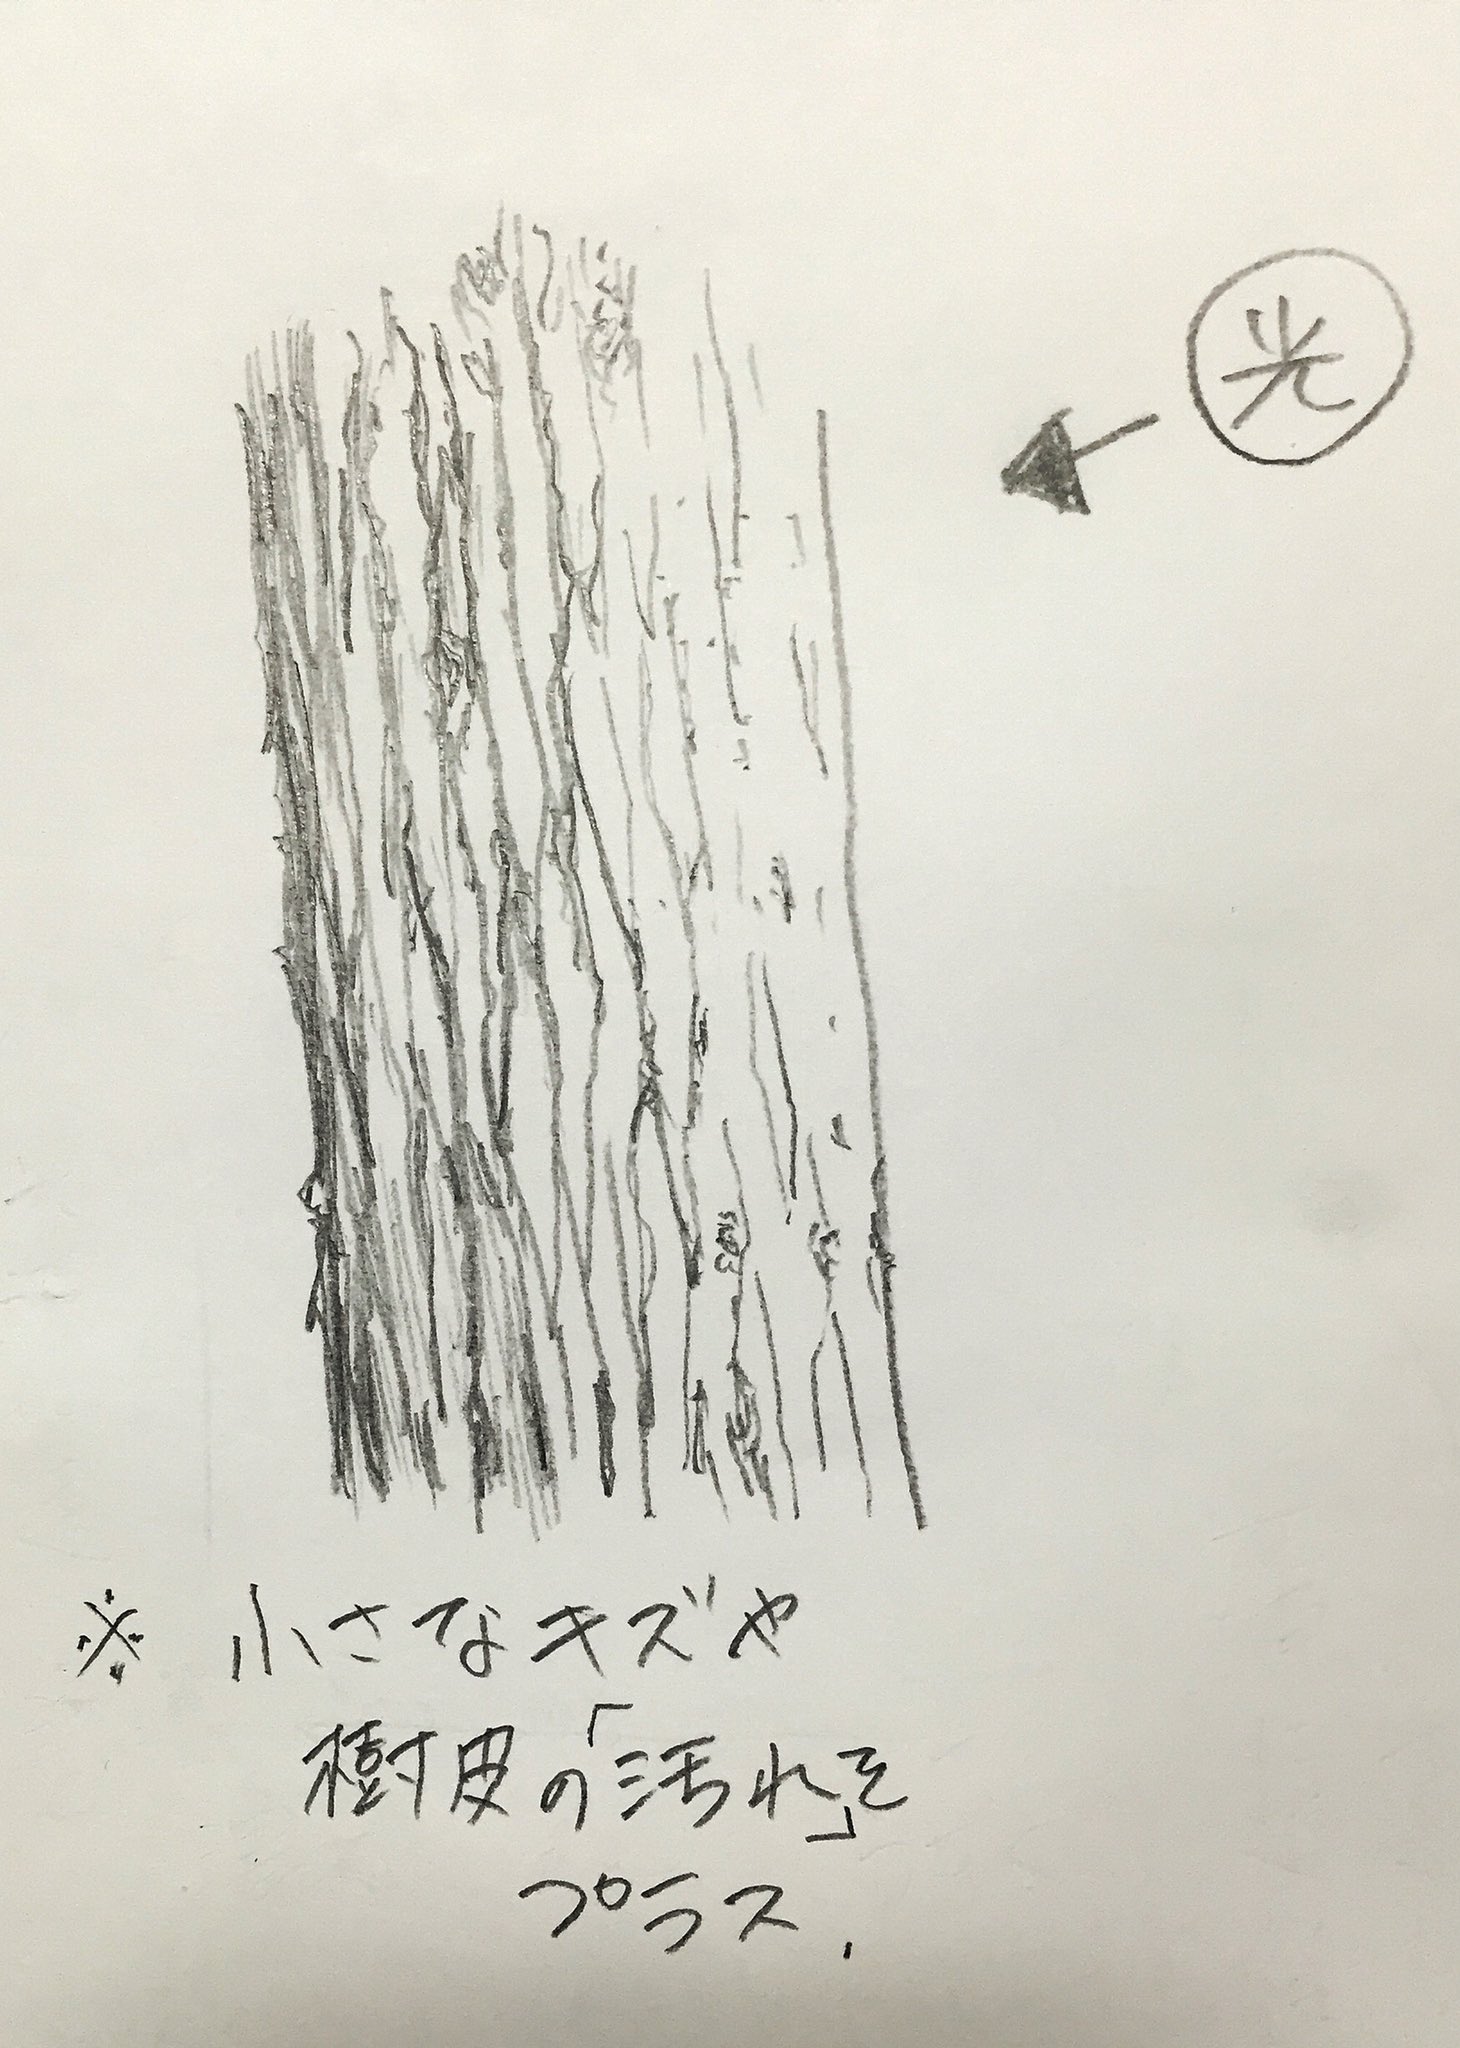 吉村拓也 イラスト講座 木の描き方 6000rt 1 7万いいね ありがとうございます 写真で解説マニュアル も よければ見てね T Co Ecd6i2iz0y Twitter